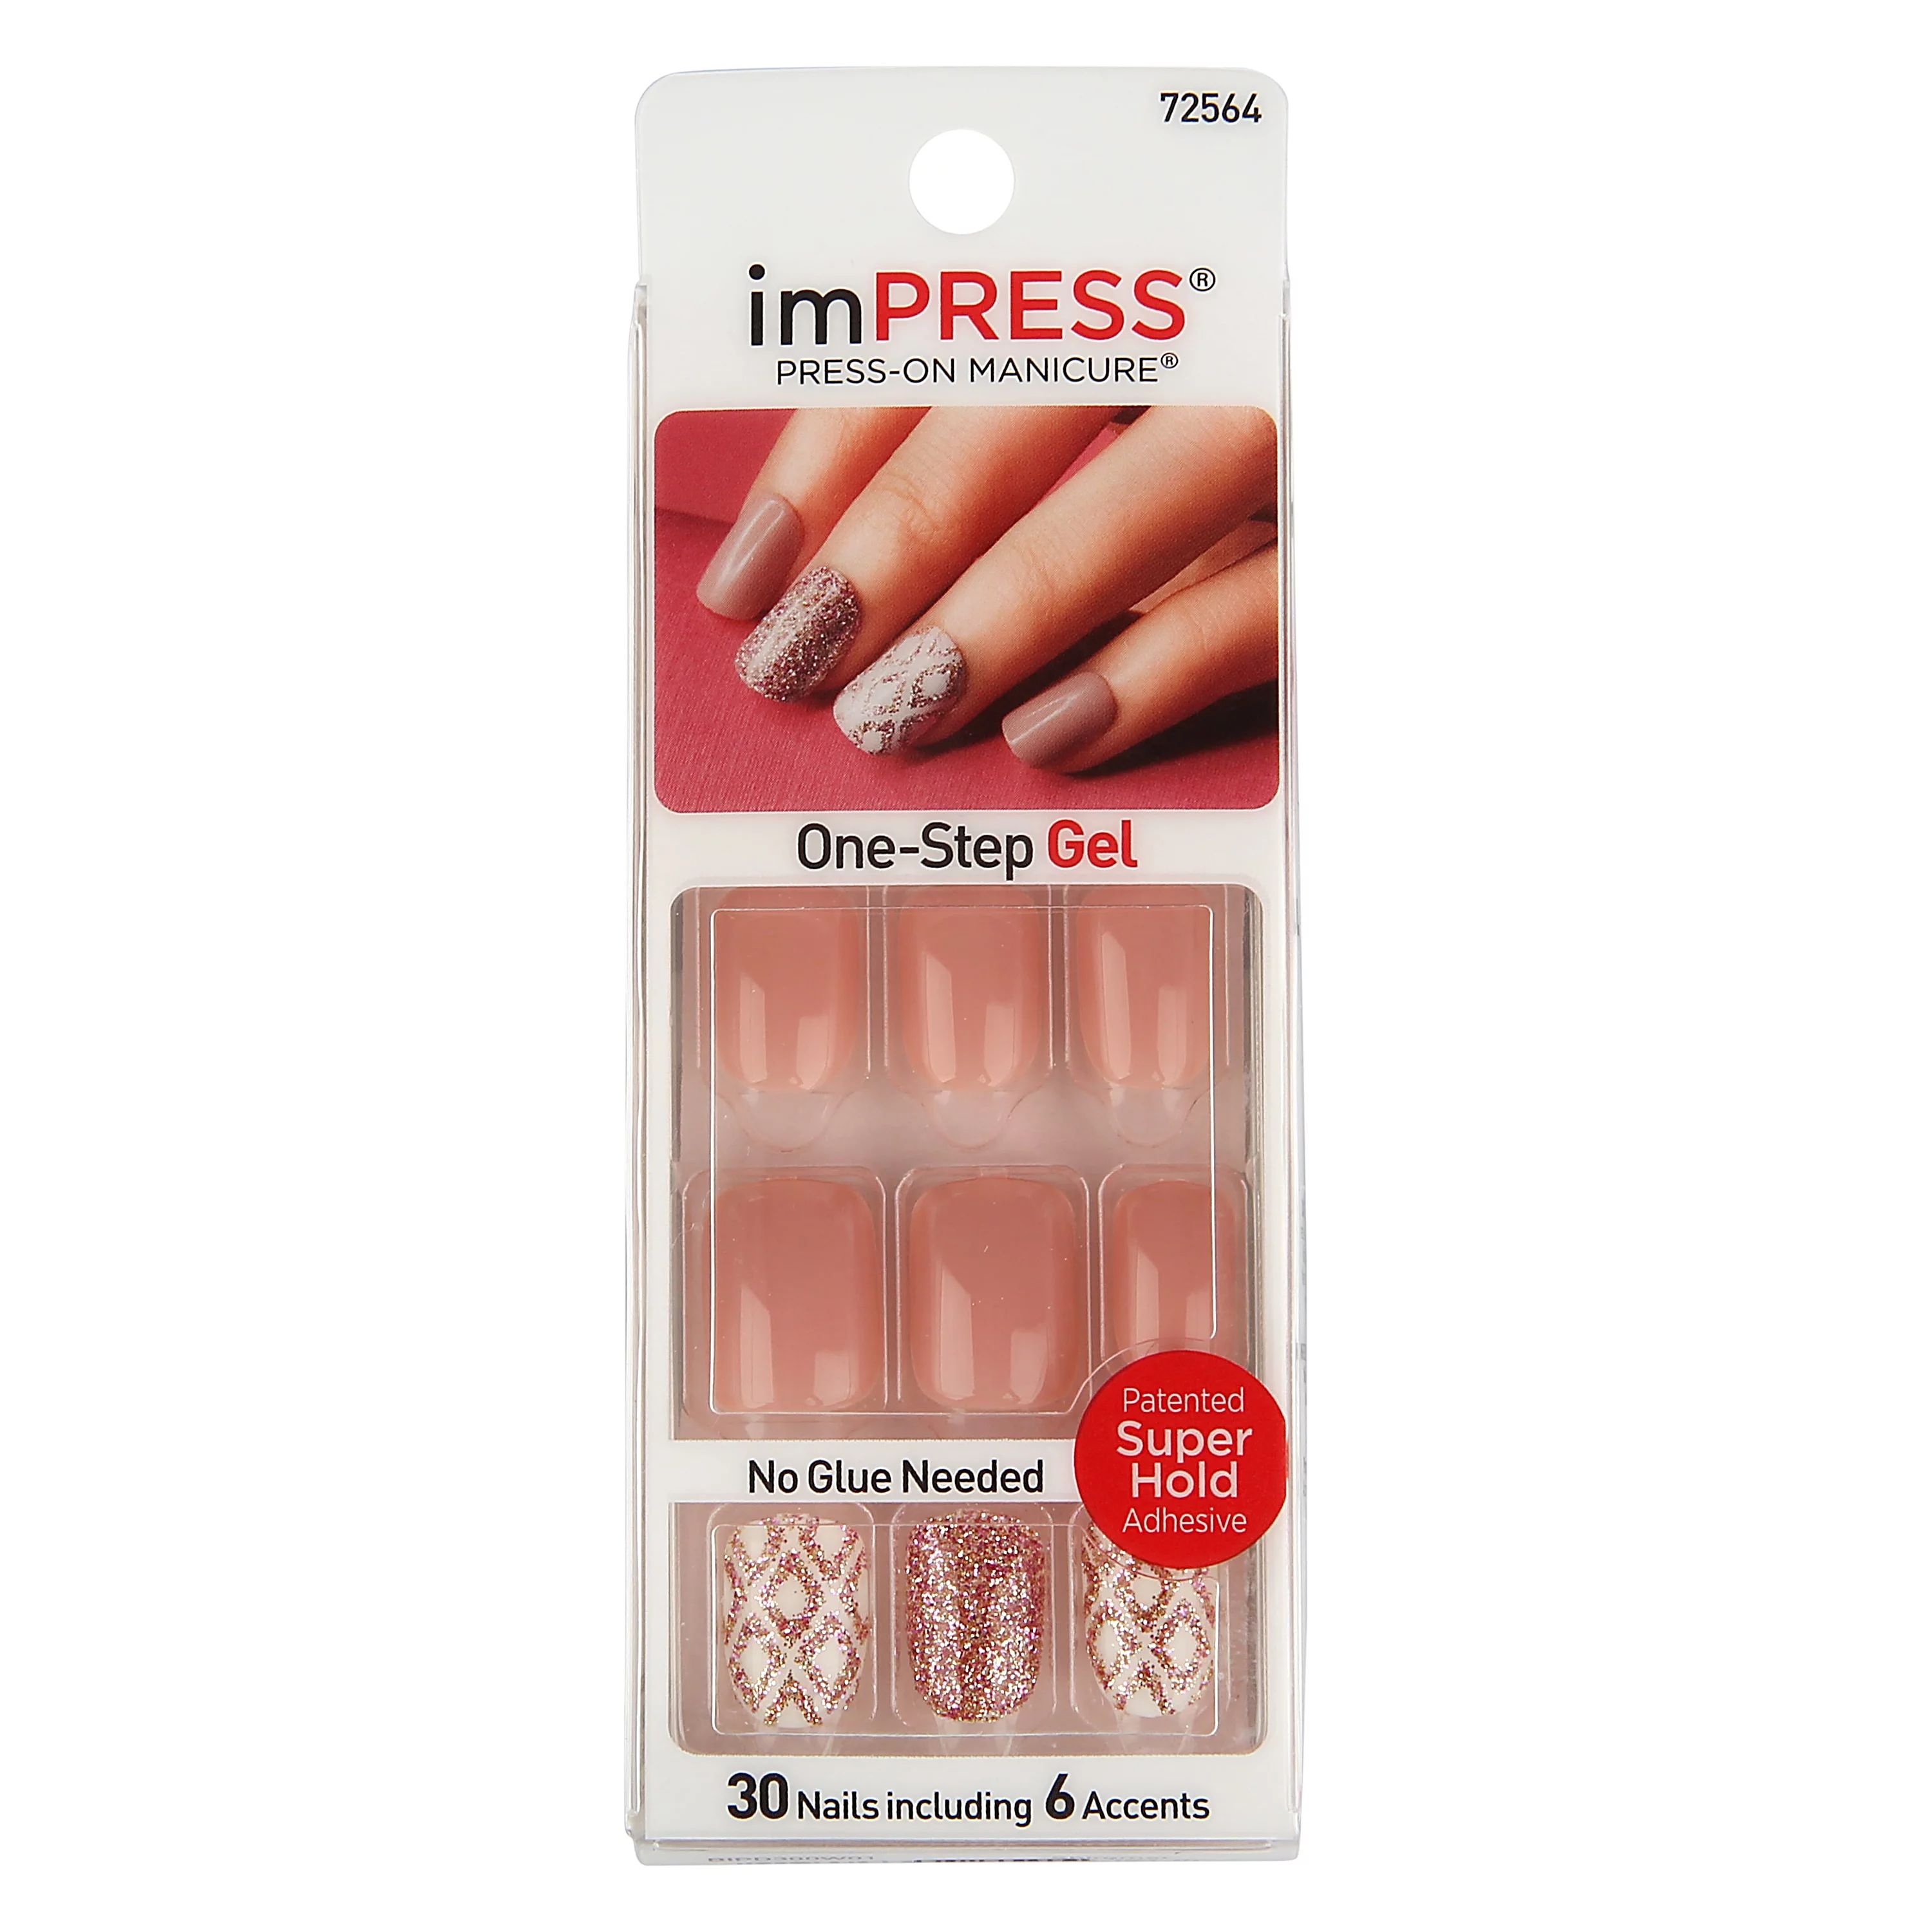 ImPRESS Press-on Nails Gel Manicure - Shimmer | Walmart (US)